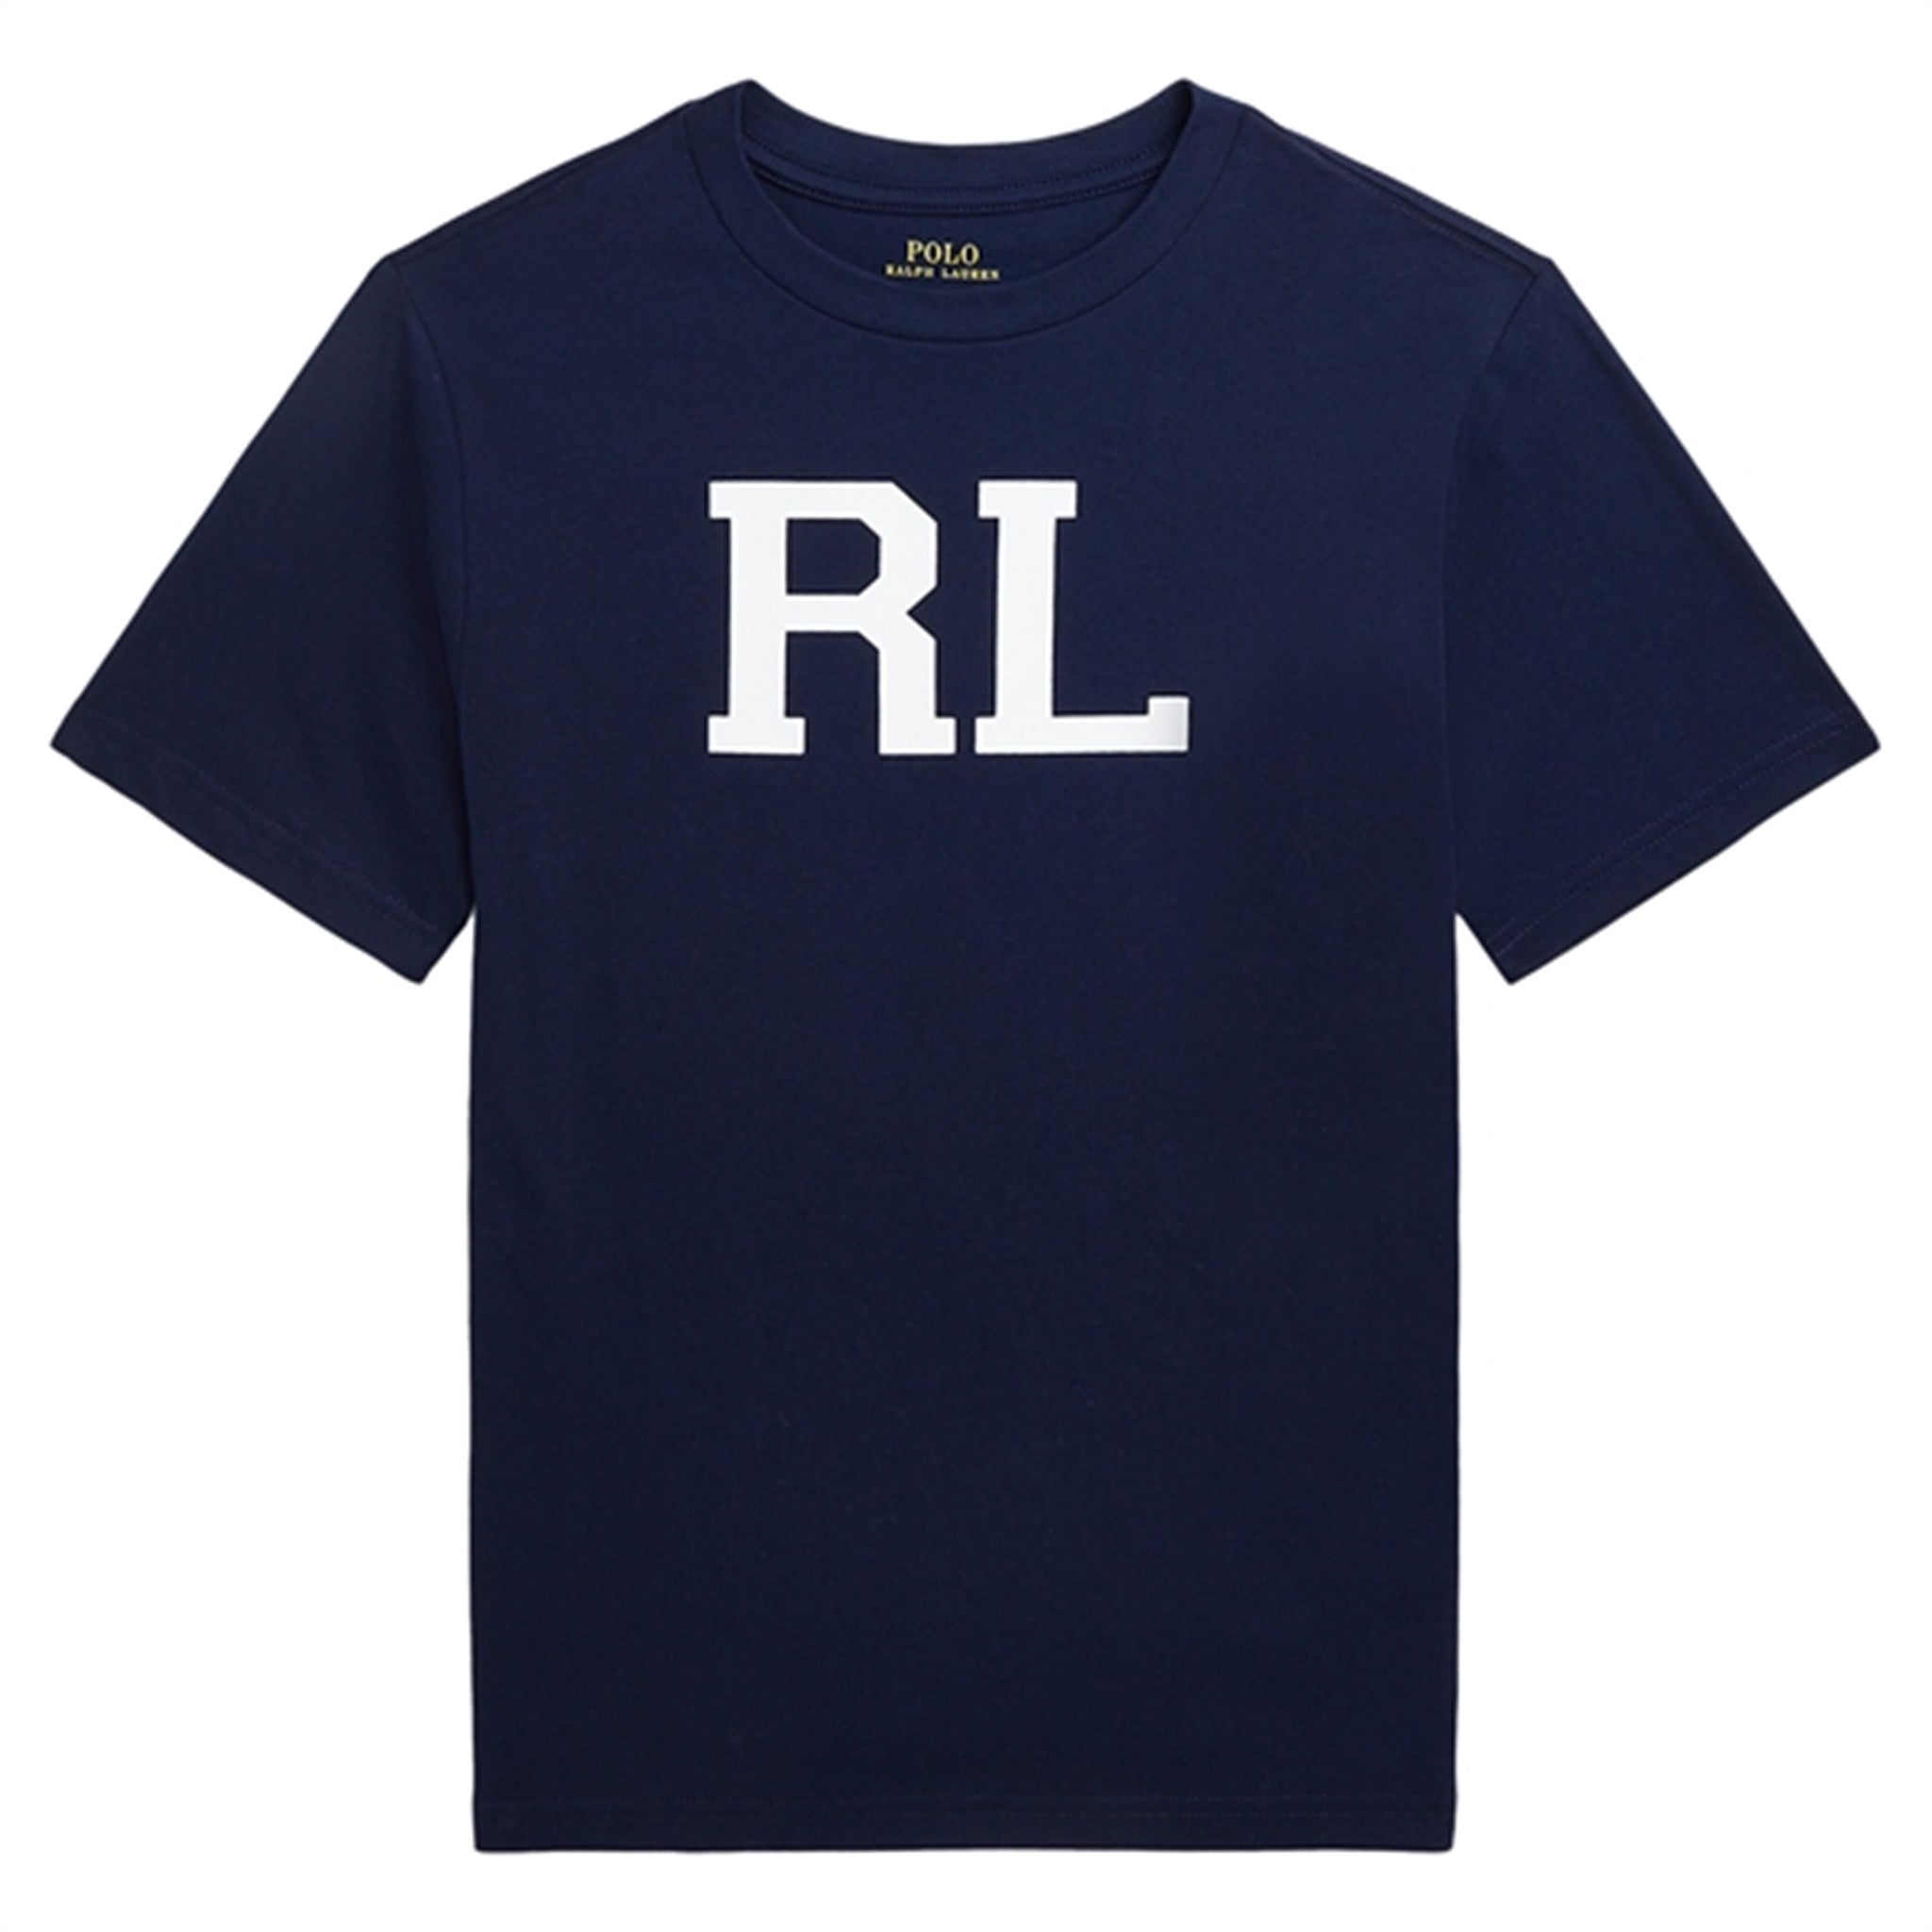 Polo Ralph Lauren T-Shirt Navy